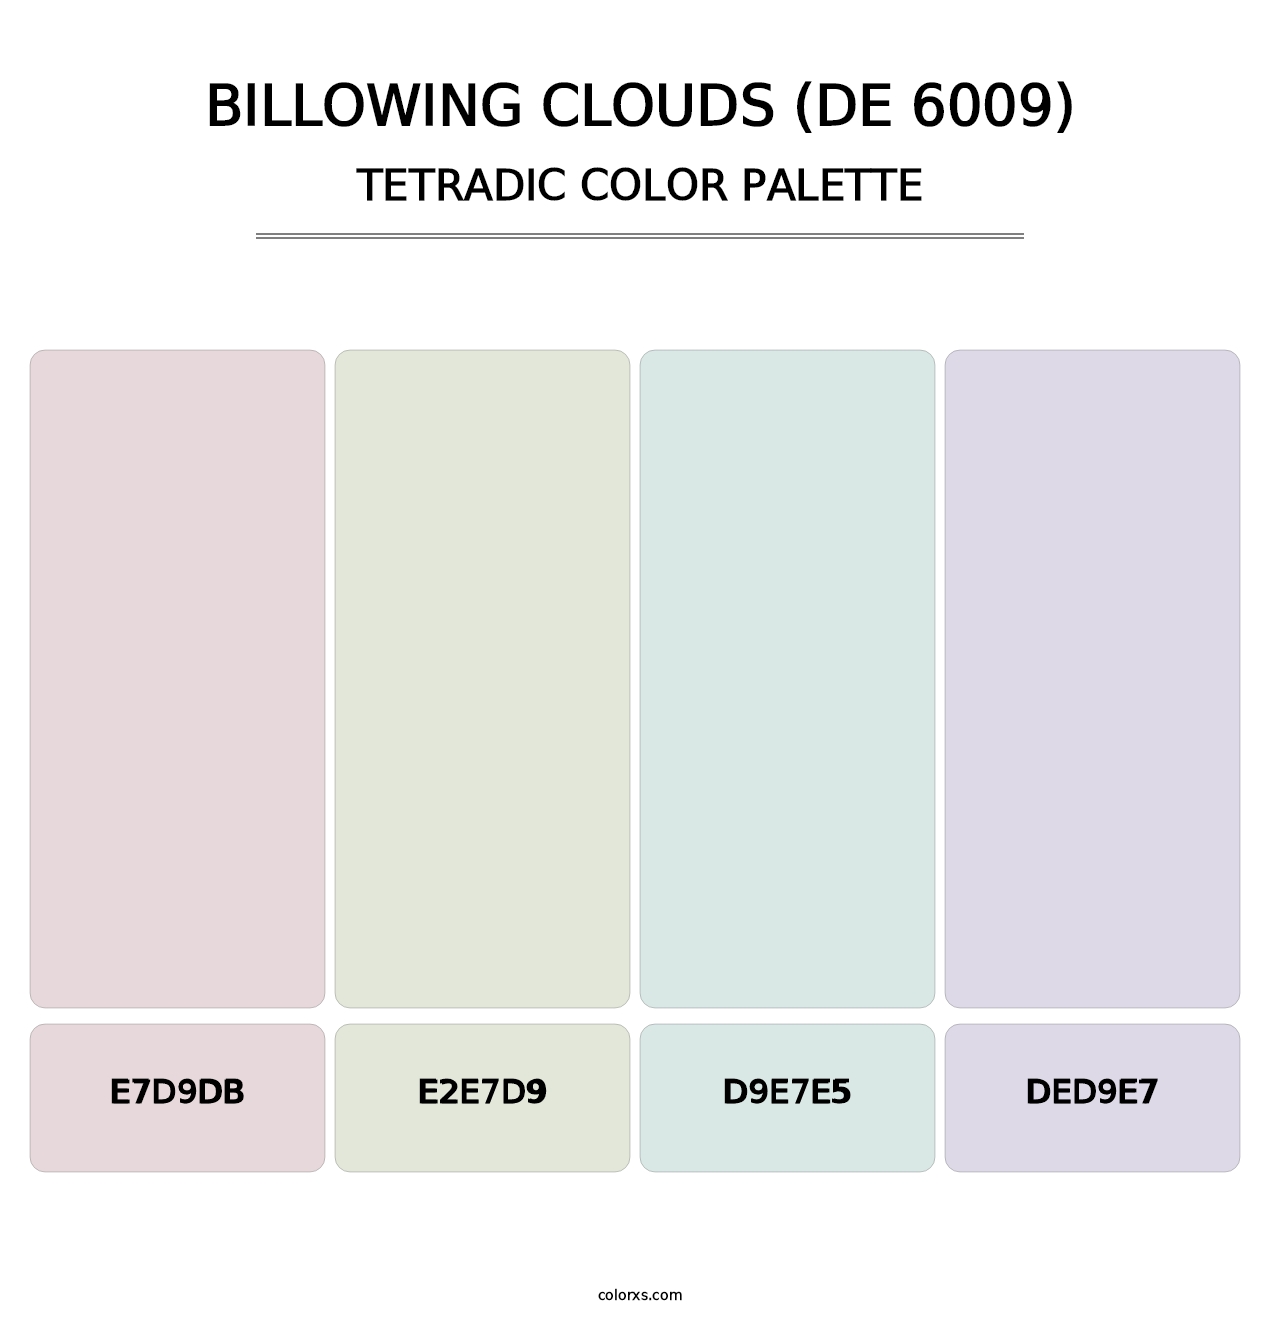 Billowing Clouds (DE 6009) - Tetradic Color Palette